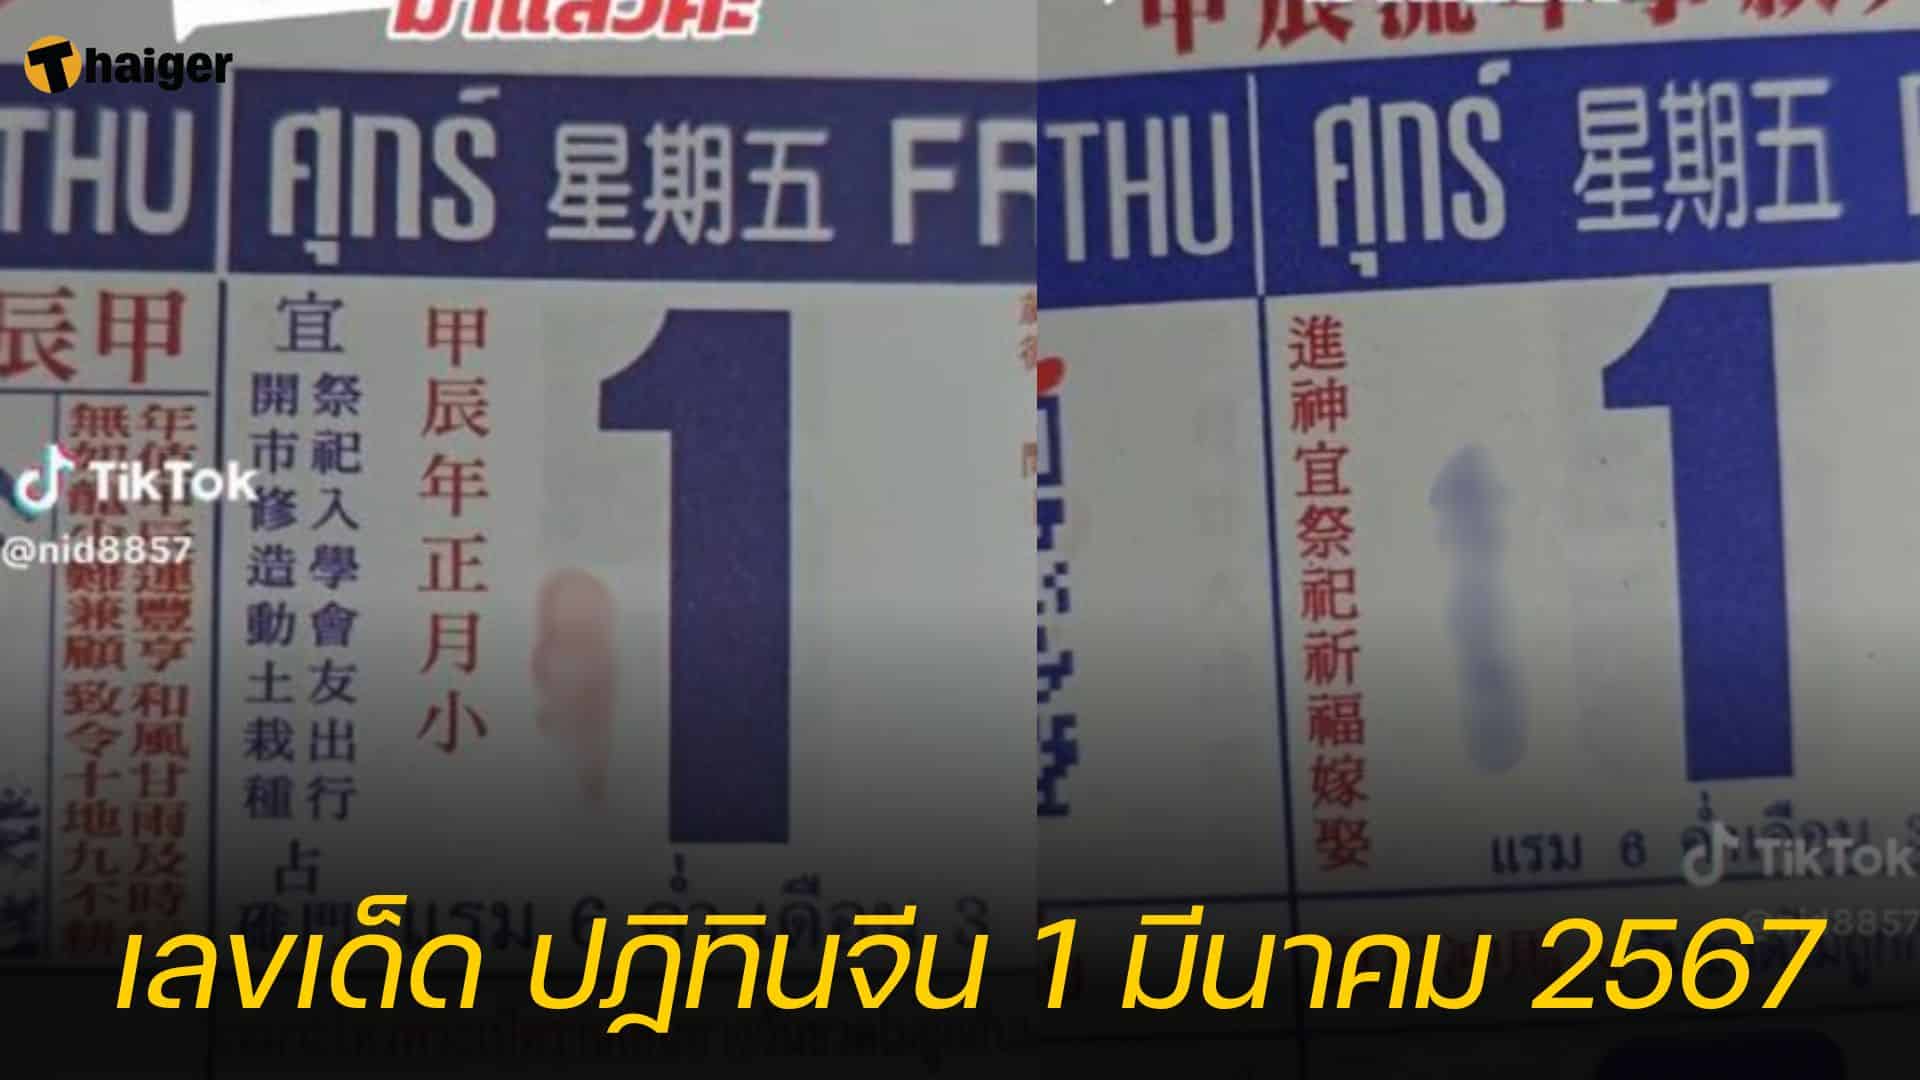 เลขเด็ด ปฏิทินจีน 1 มีนาคม 2567 ส่องกันจุกๆ 4 ฉบับ | Thaiger ข่าวไทย